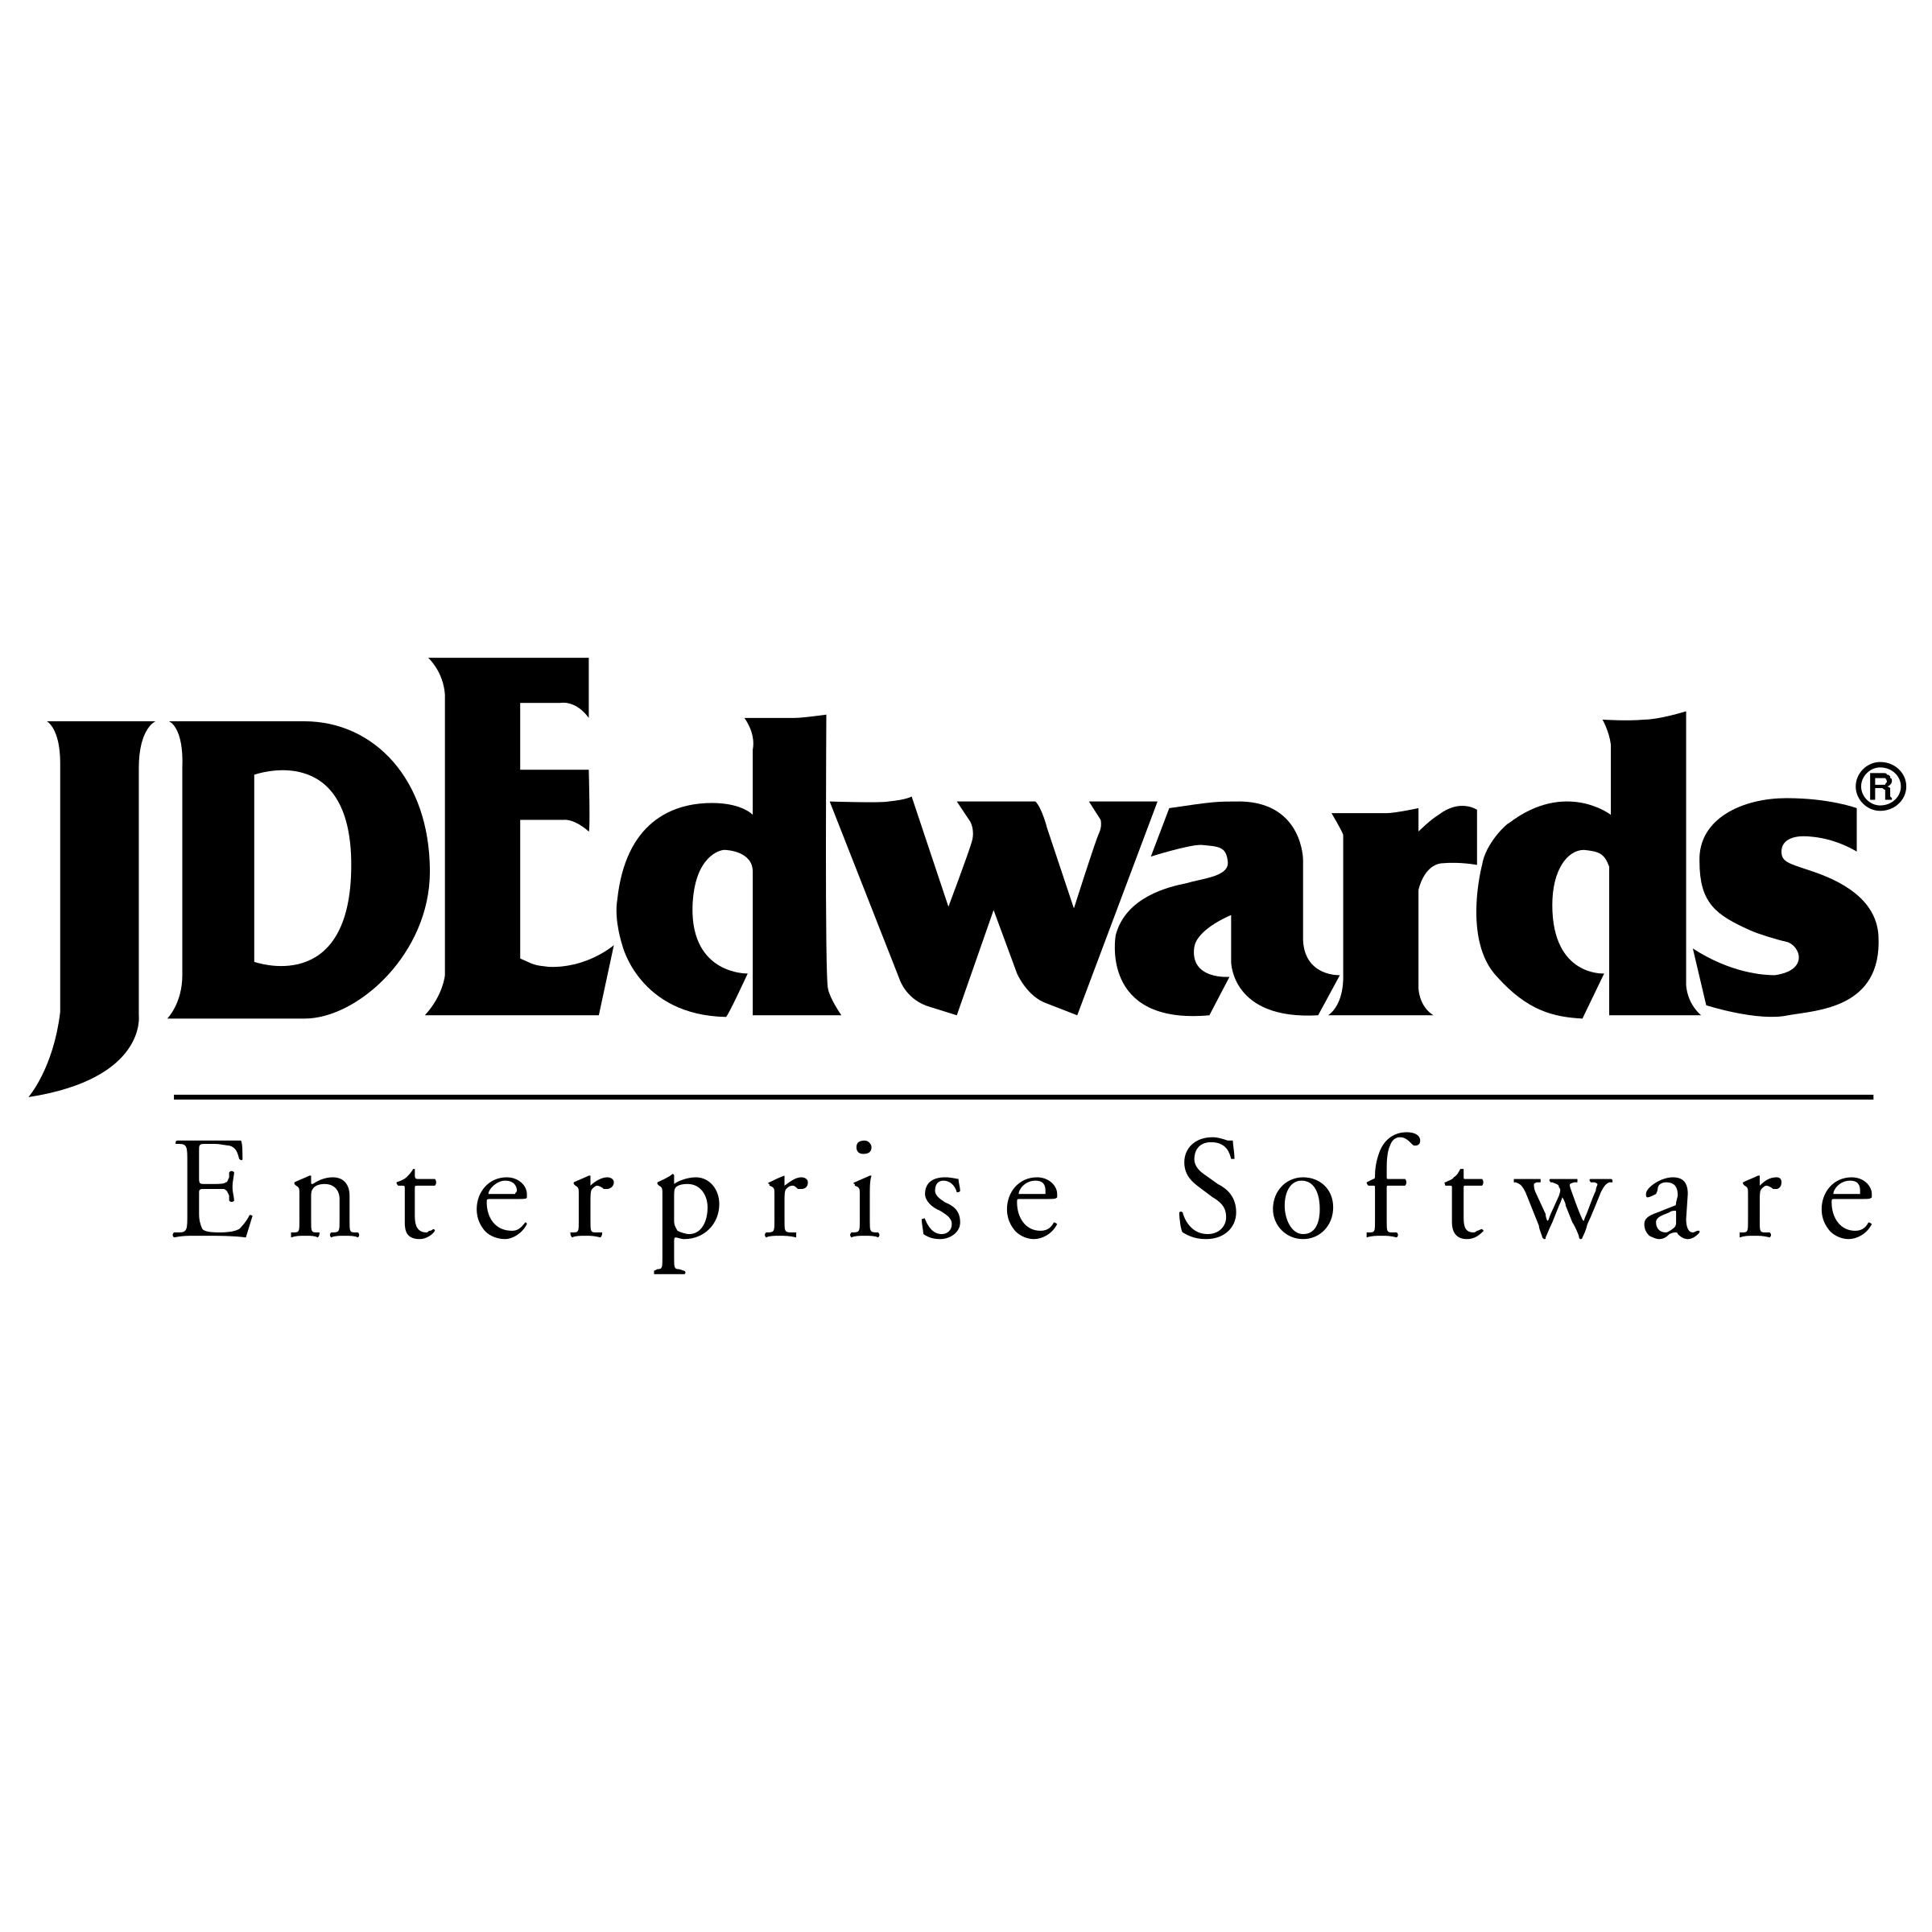 Edwards Logo - JD Edwards Logo PNG Transparent & SVG Vector - Freebie Supply